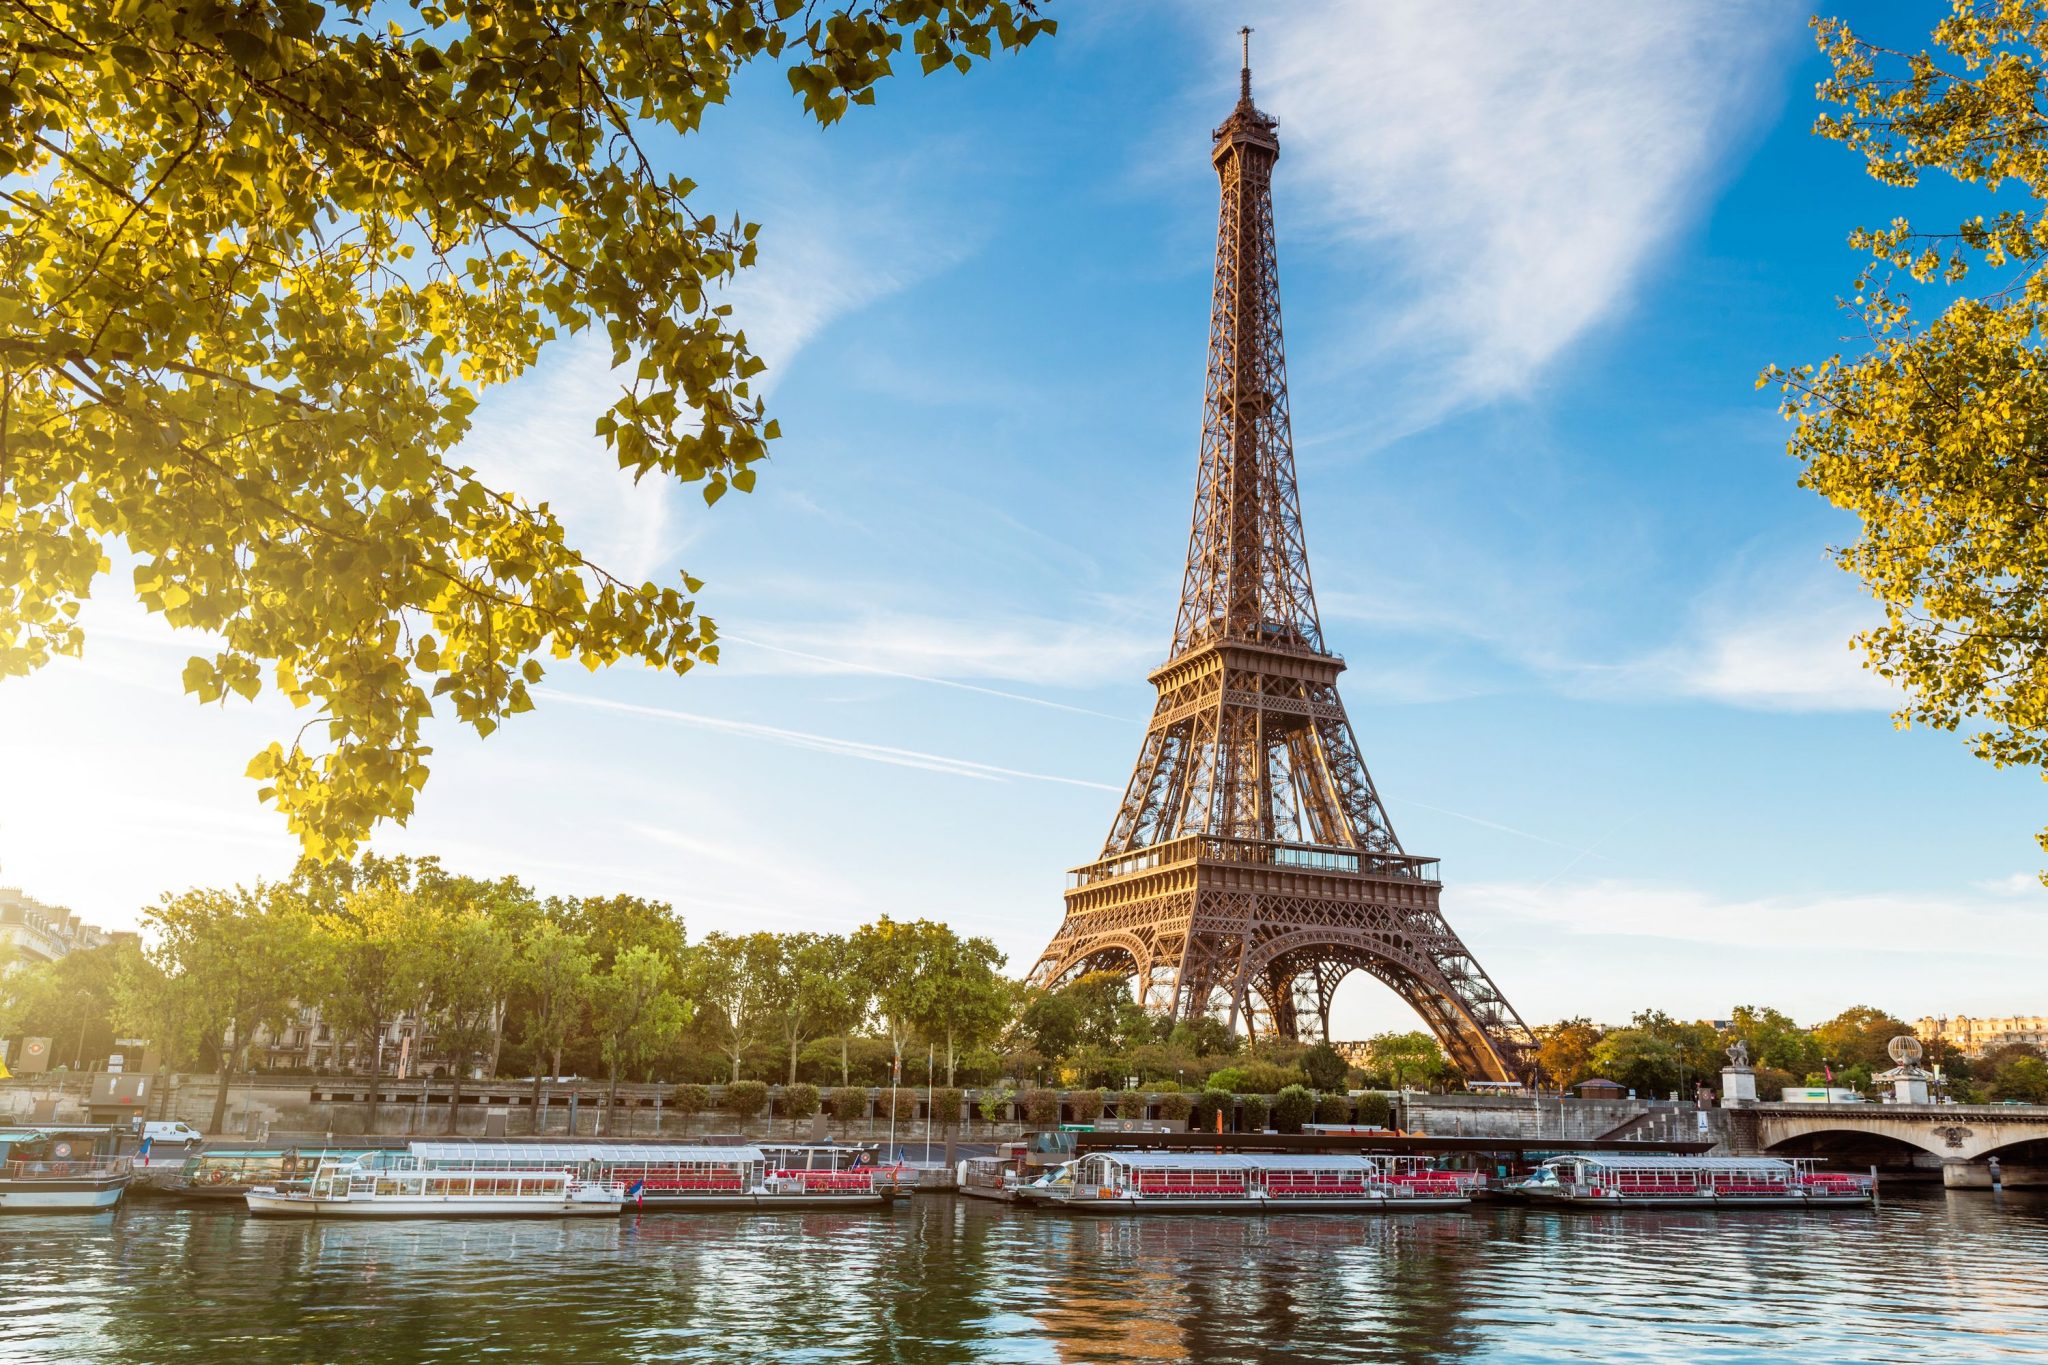 Πύργος του Άιφελ (Tour Eiffel) - Παρίσι | TopTraveller